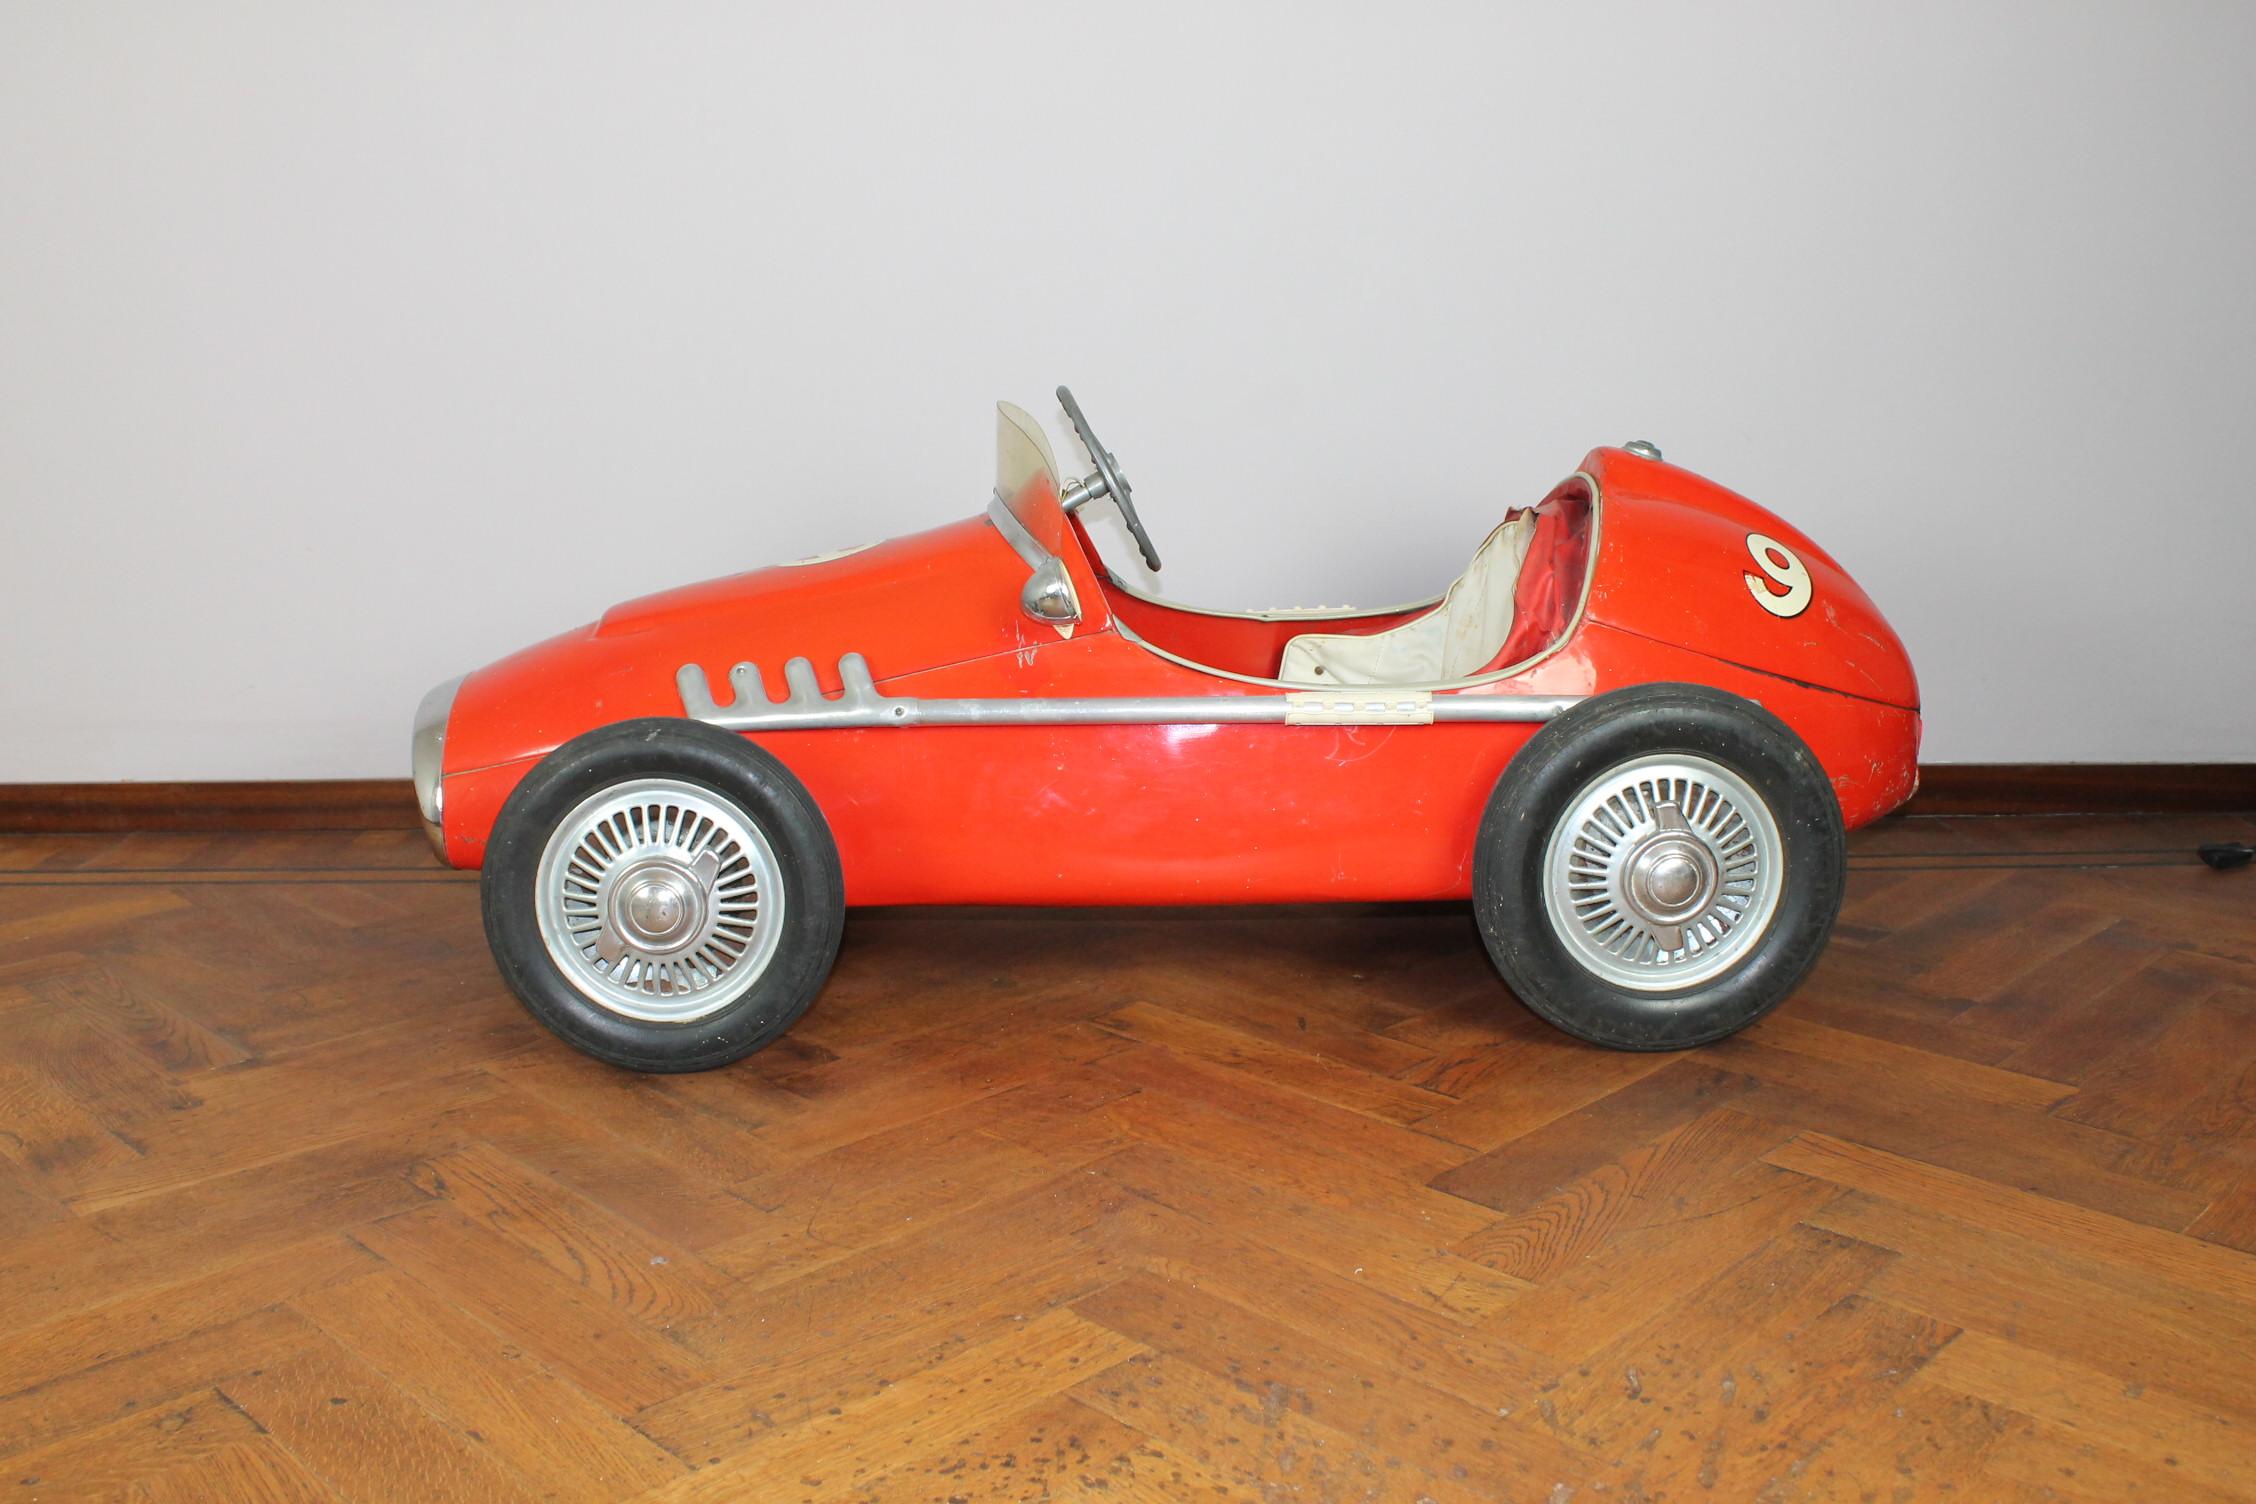 Superbe voiture à pédales Ferrari numéro 9 vintage de grande taille. 
Cette voiture jouet pour enfant a été fabriquée en Italie par Corrado & Remondini dans les années 1950.
Ils l'ont appelé l'Indianapolis de C.I.C. car il était similaire au